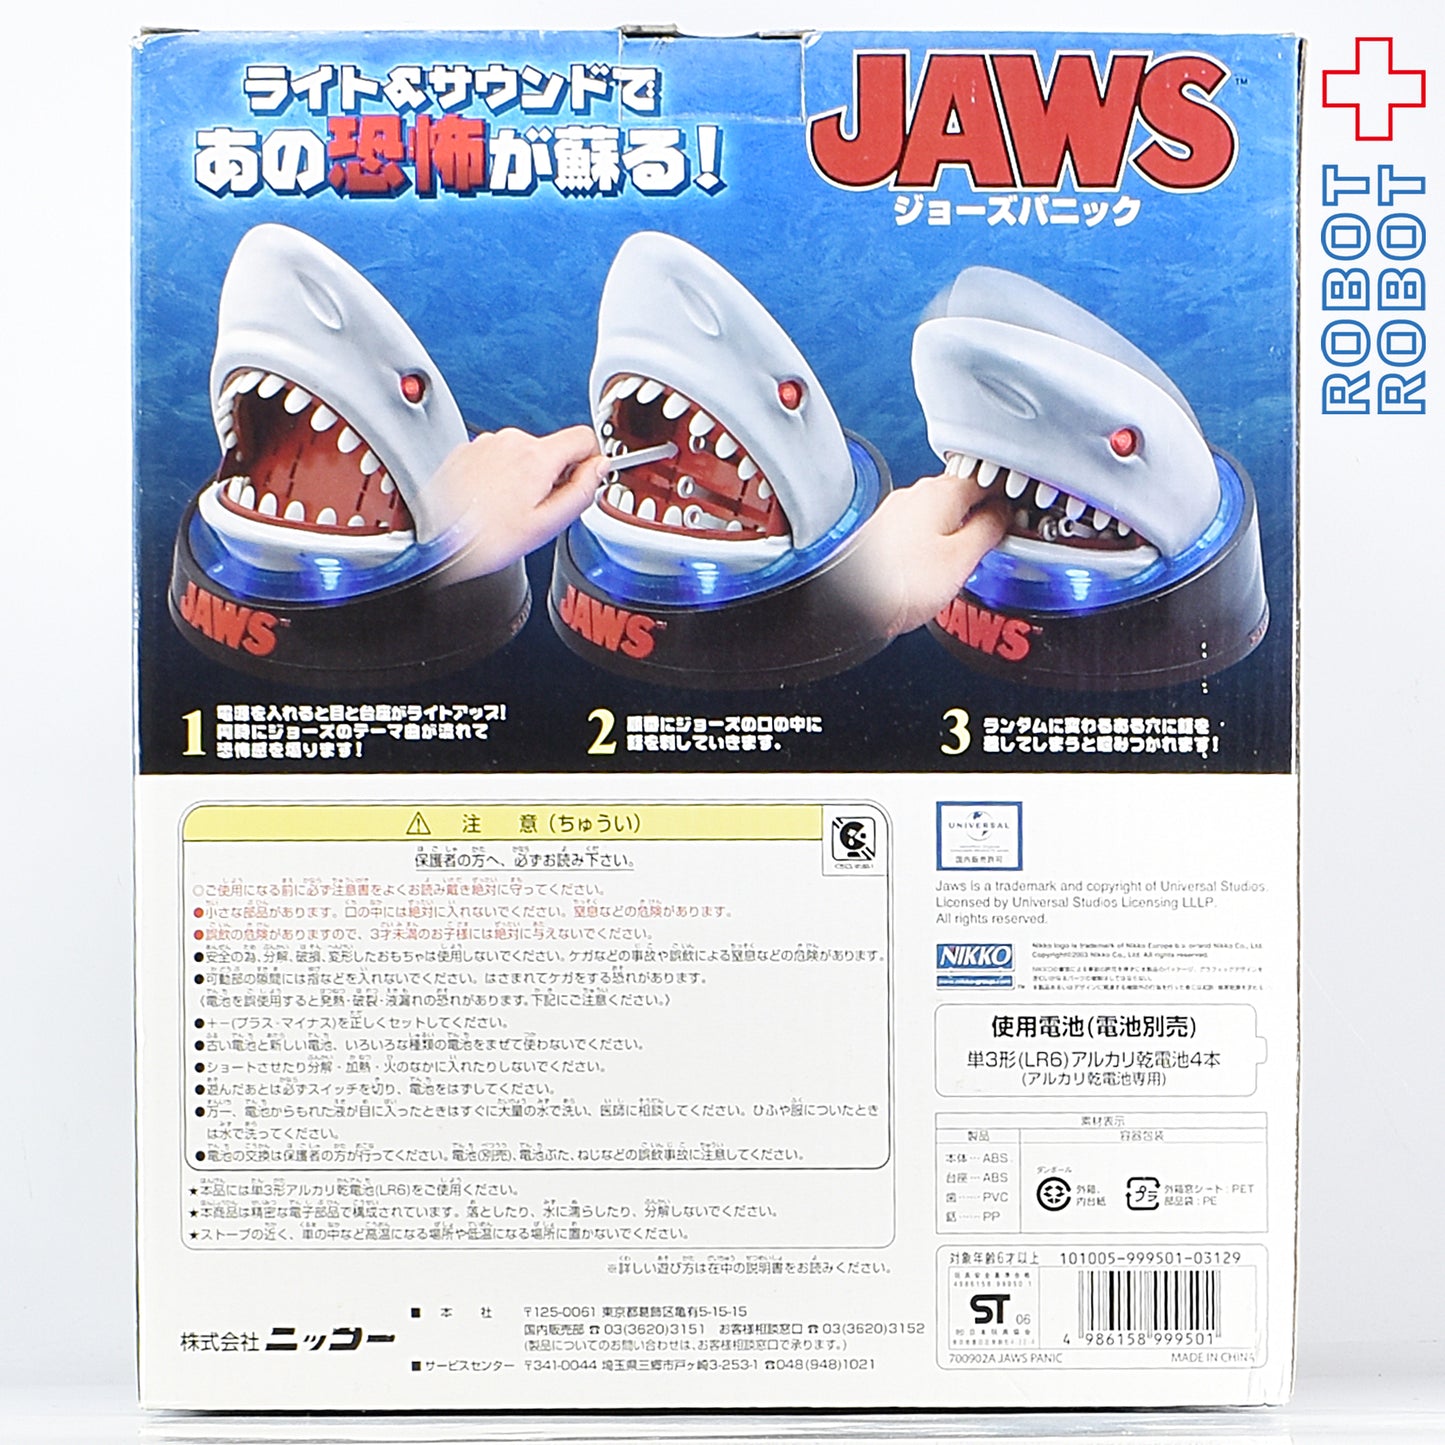 ニッコー JAWS ジョーズ・パニック ゲーム